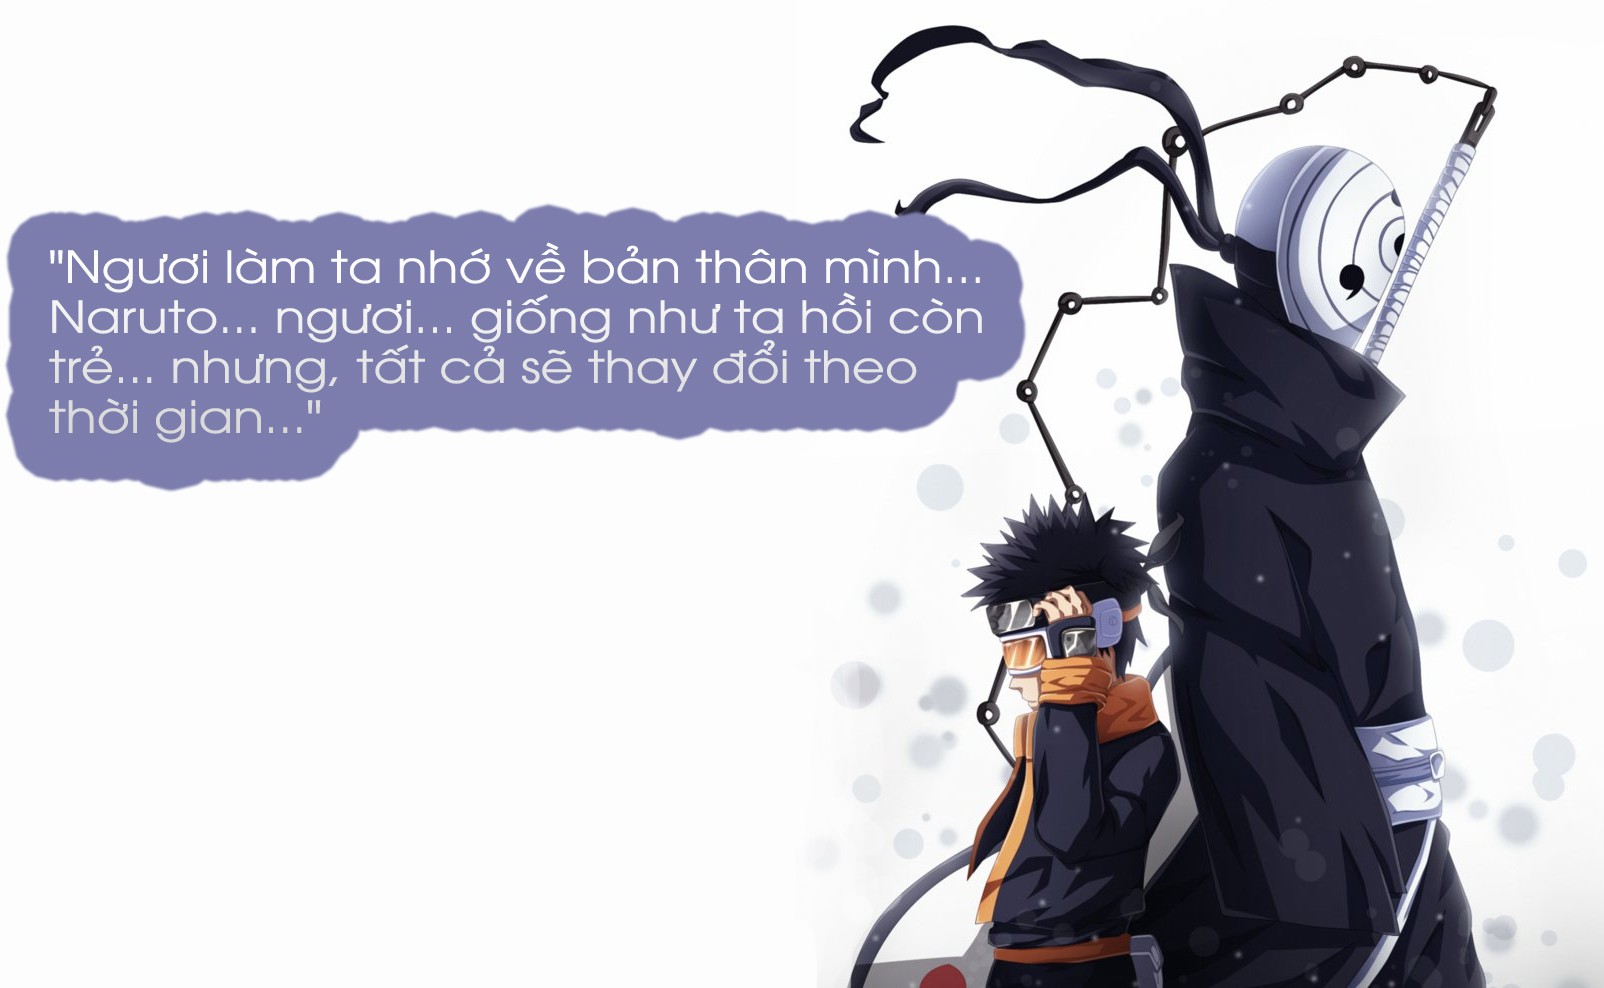 Uchiha Obito là một trong những nhân vật đáng nhớ của Naruto. Xem qua một vài hình ảnh của anh ta để đắm chìm trong cuộc phiêu lưu của Nhẫn Giả thôi nào!